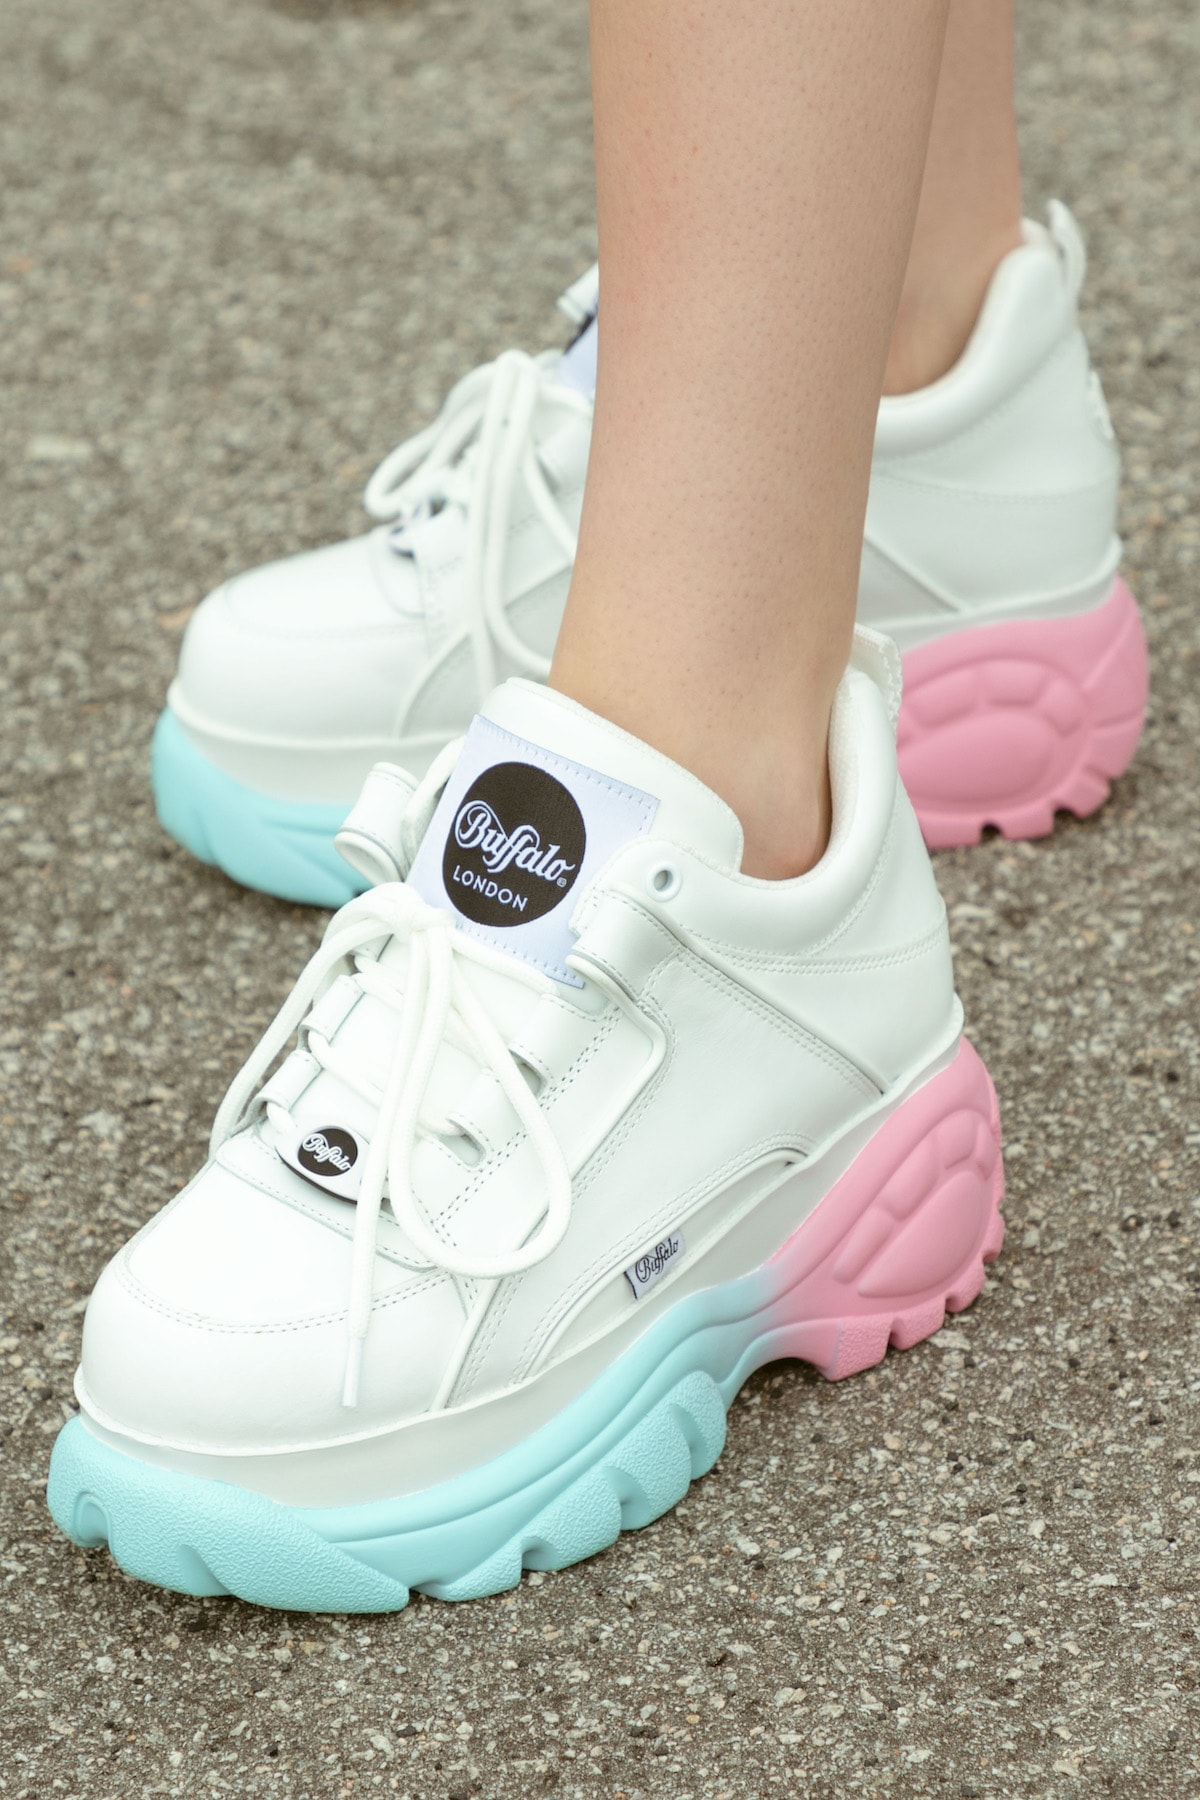 Buffalo London Pastel Gradient Sneaker HBX Exclusive Release Shoe Platform Pink Blue 